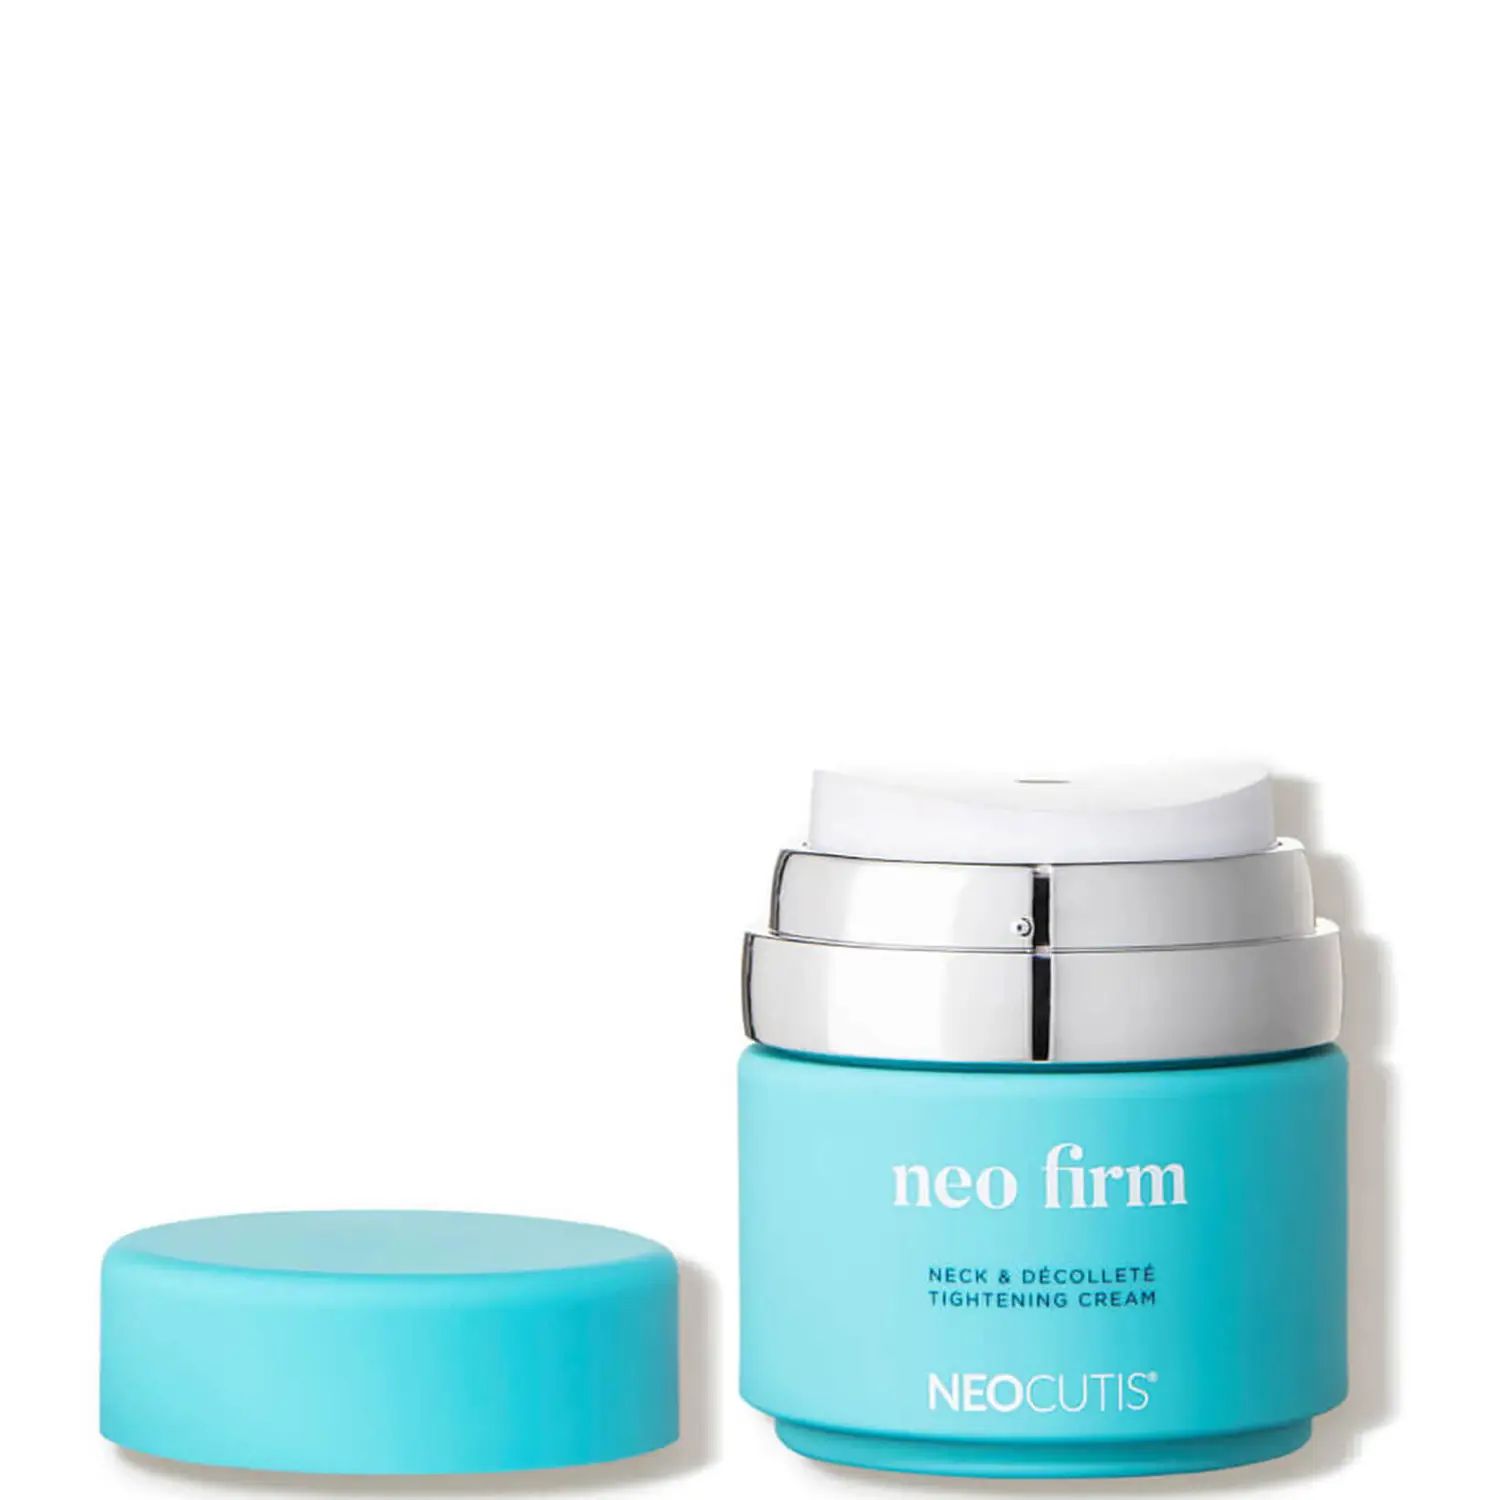 Neocutis NEO Firm Neck Decollete Tightening Cream (50 g.) | Dermstore